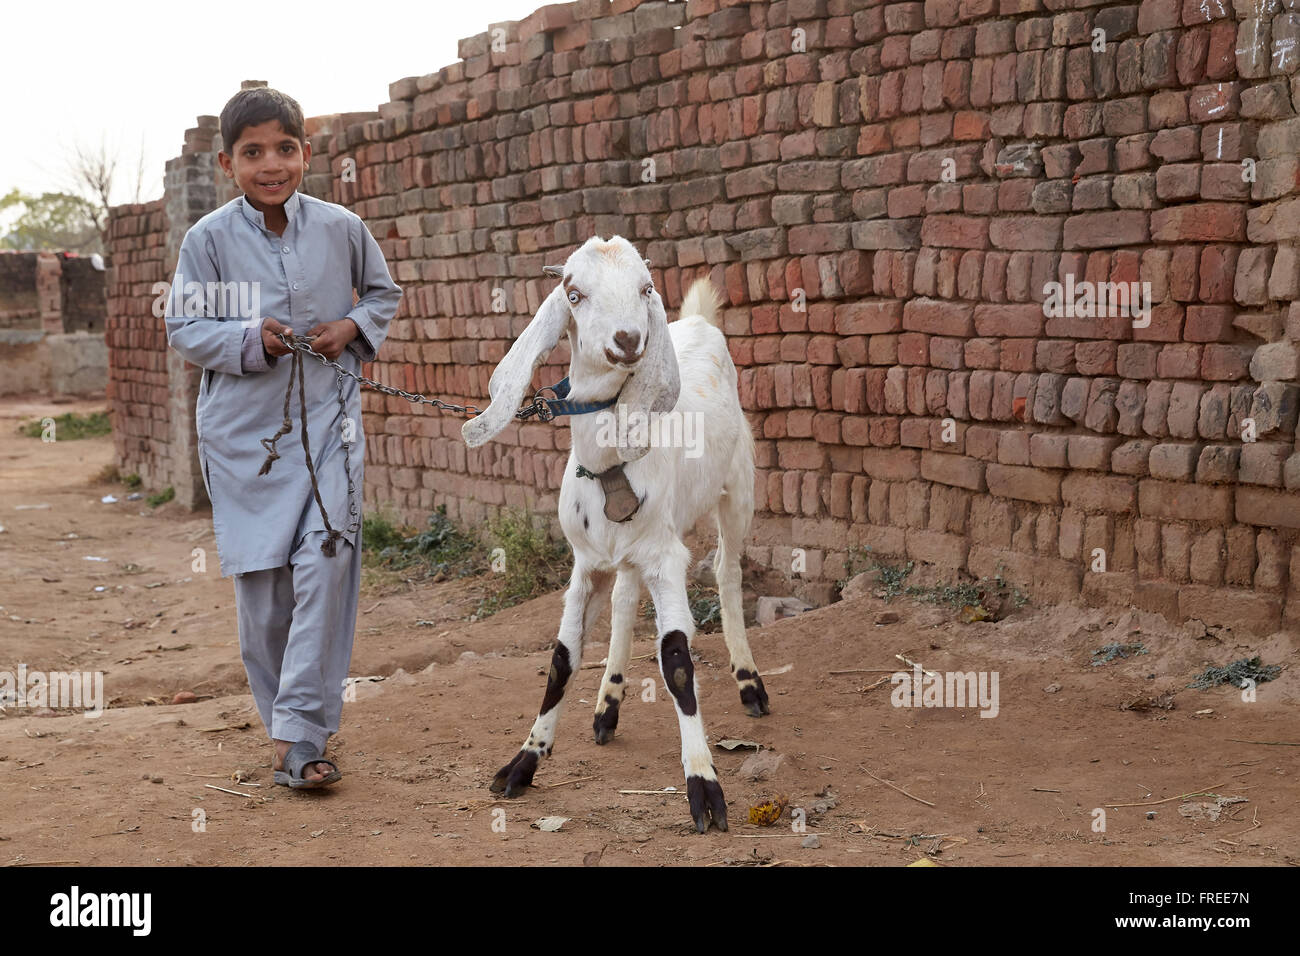 Des enfants de chèvre sur une laisse, Mahey, Pakistan Banque D'Images